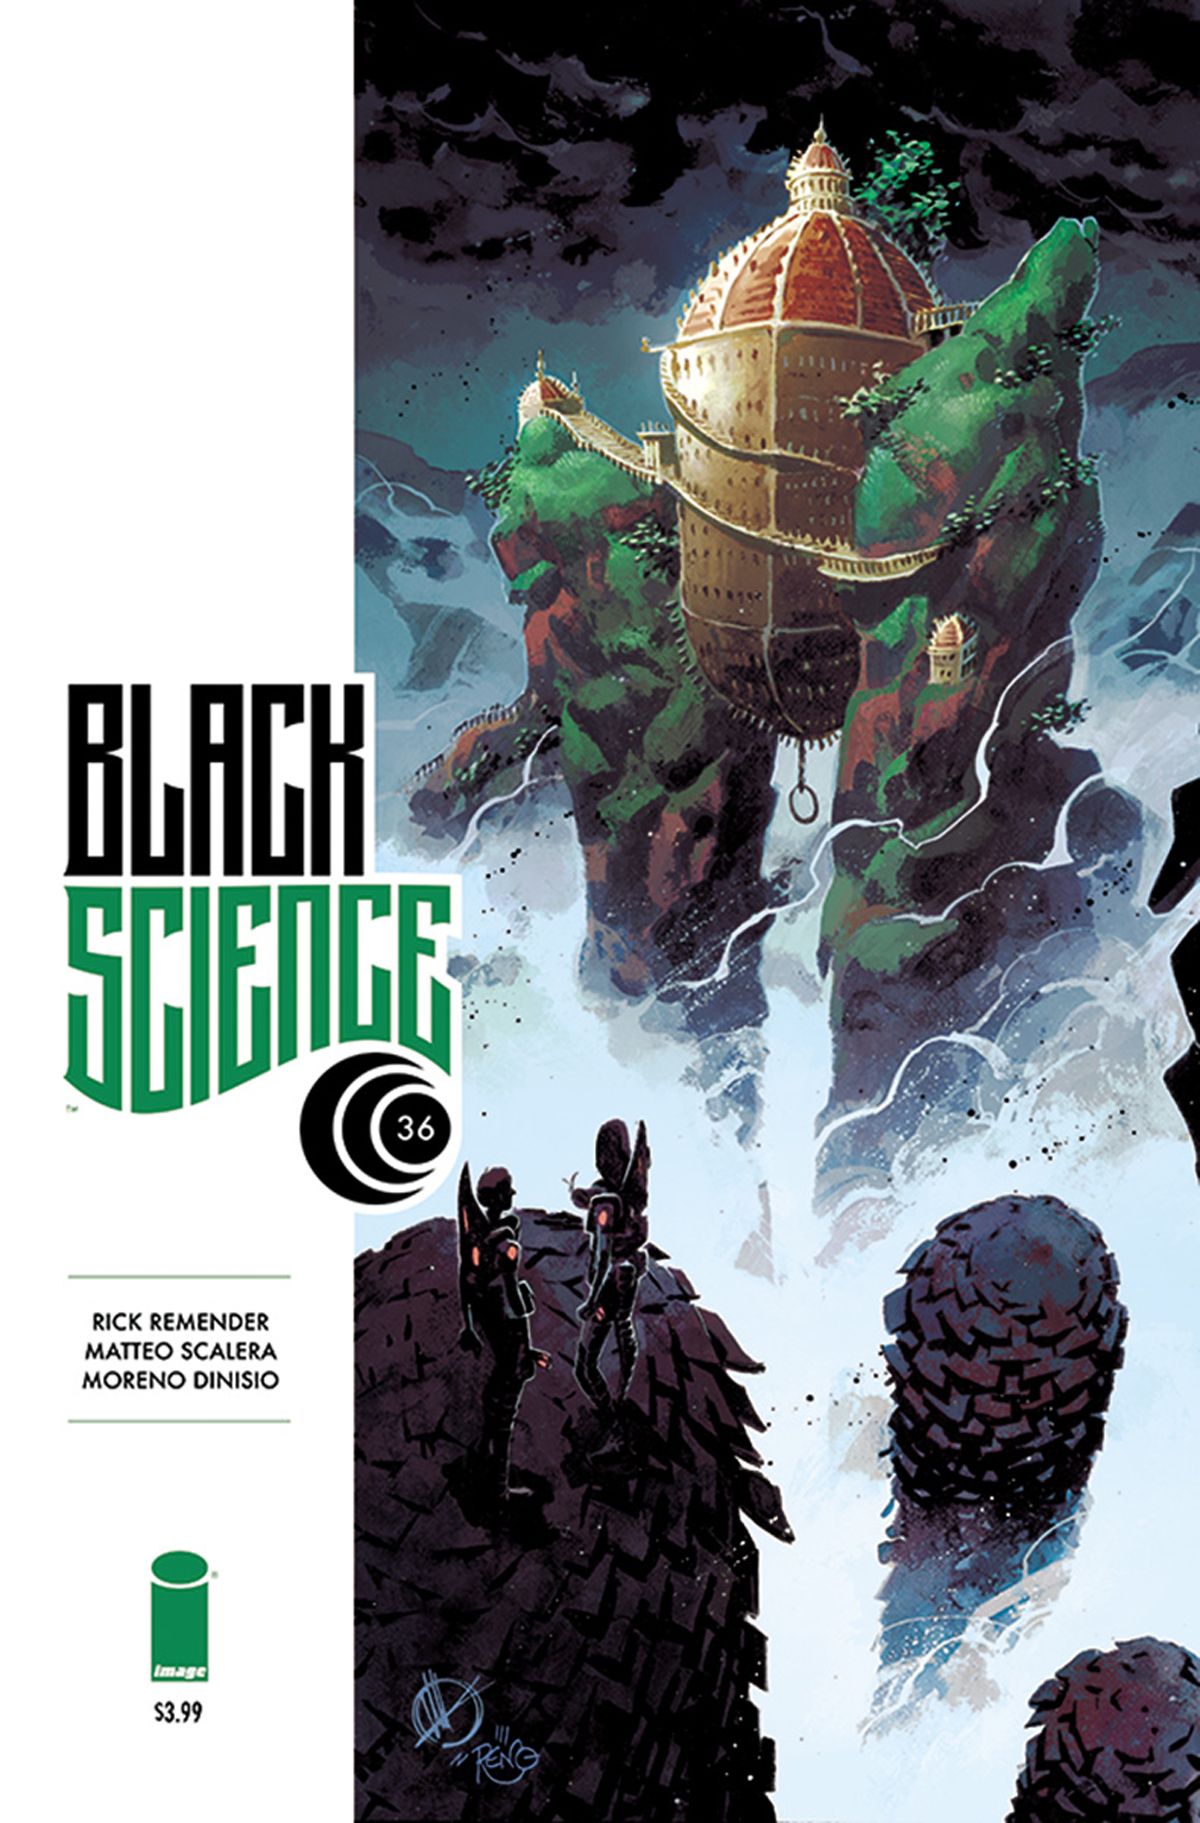 Black Science #36 Comic